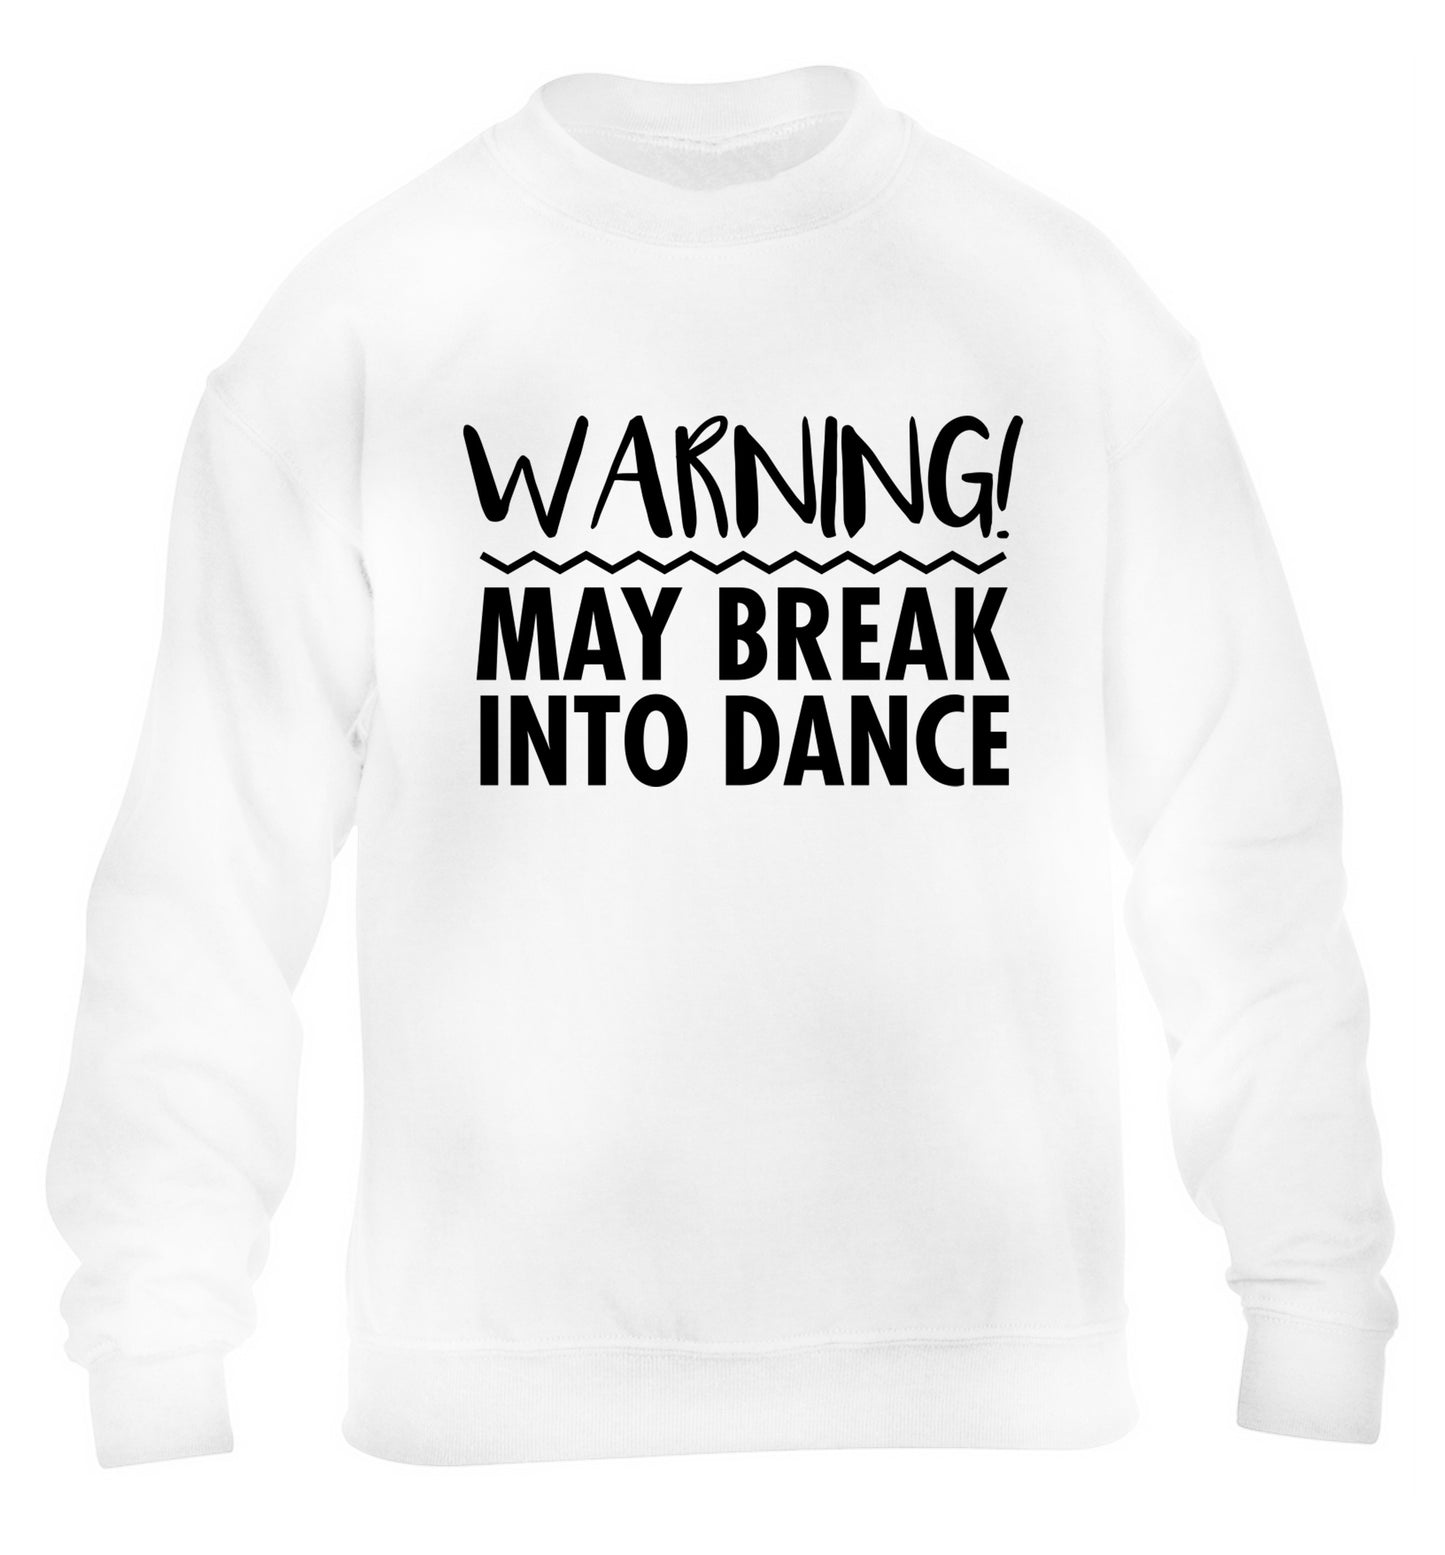 Warning may break into dance children's white sweater 12-14 Years